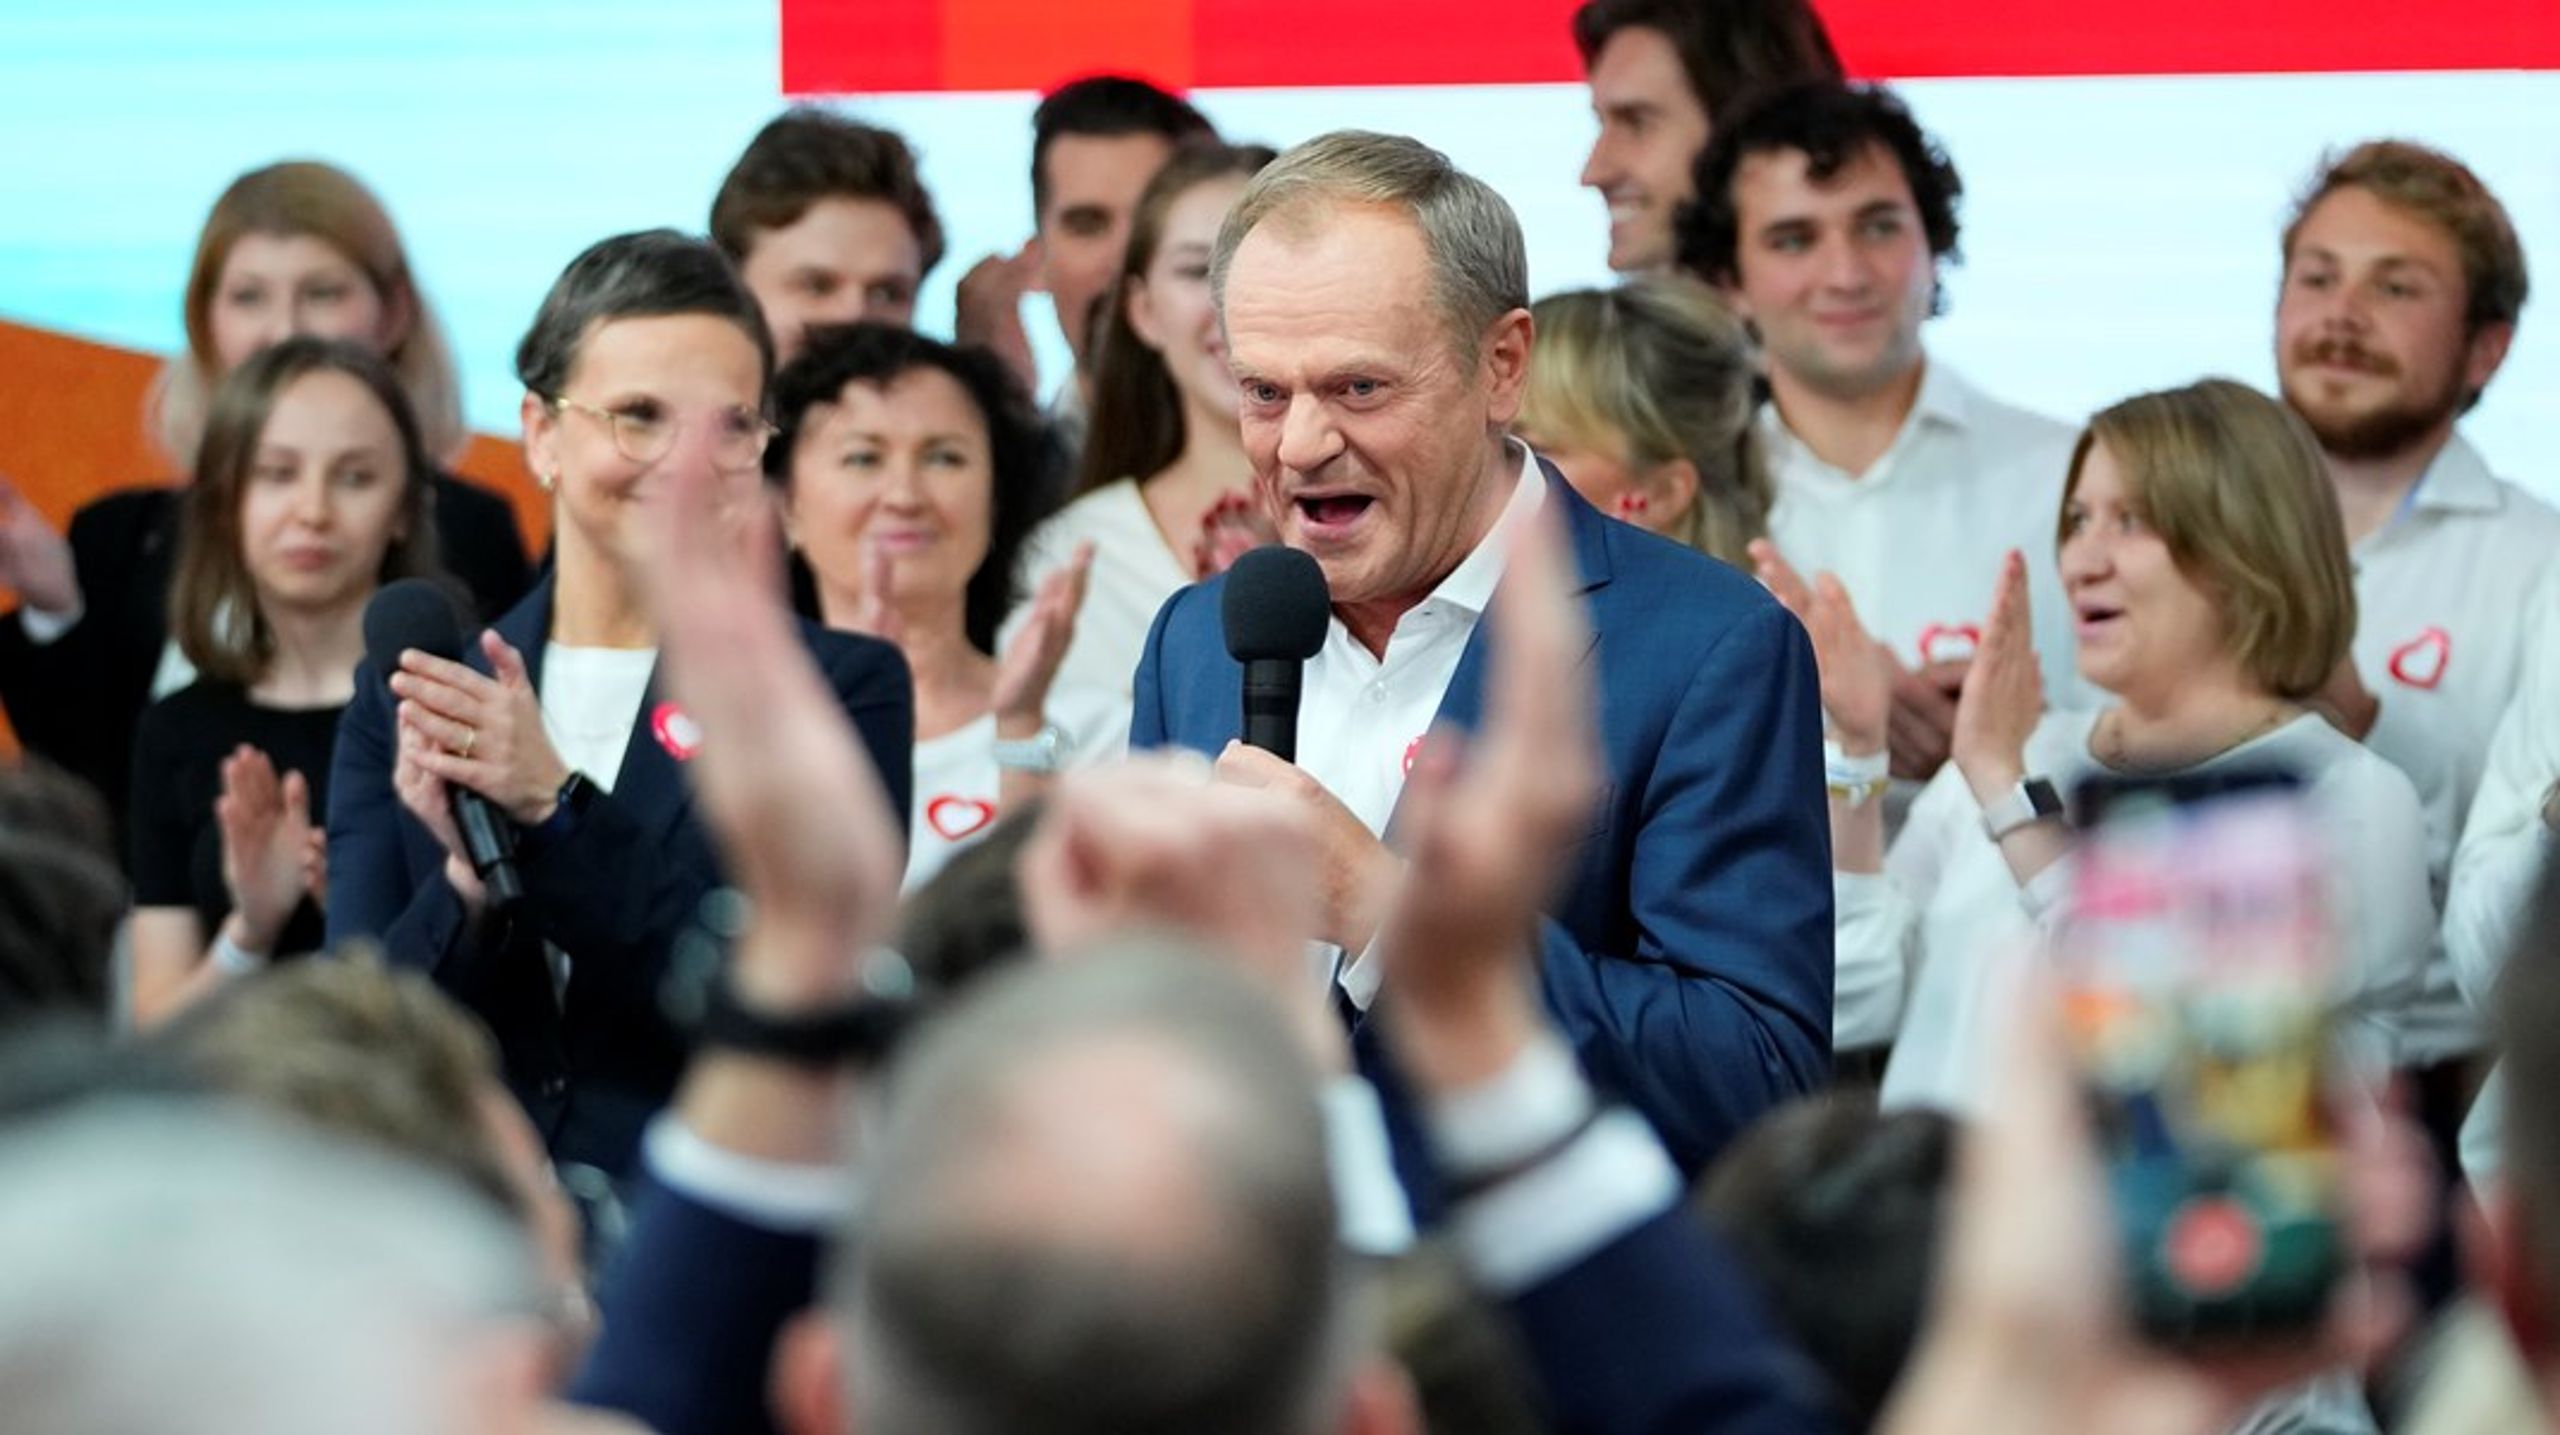 Europeiska rådets tidigare ordförande och oppositionsledaren Donald Tusk ser utifrån preliminära siffror ut att ta hem segern i det polska valet.